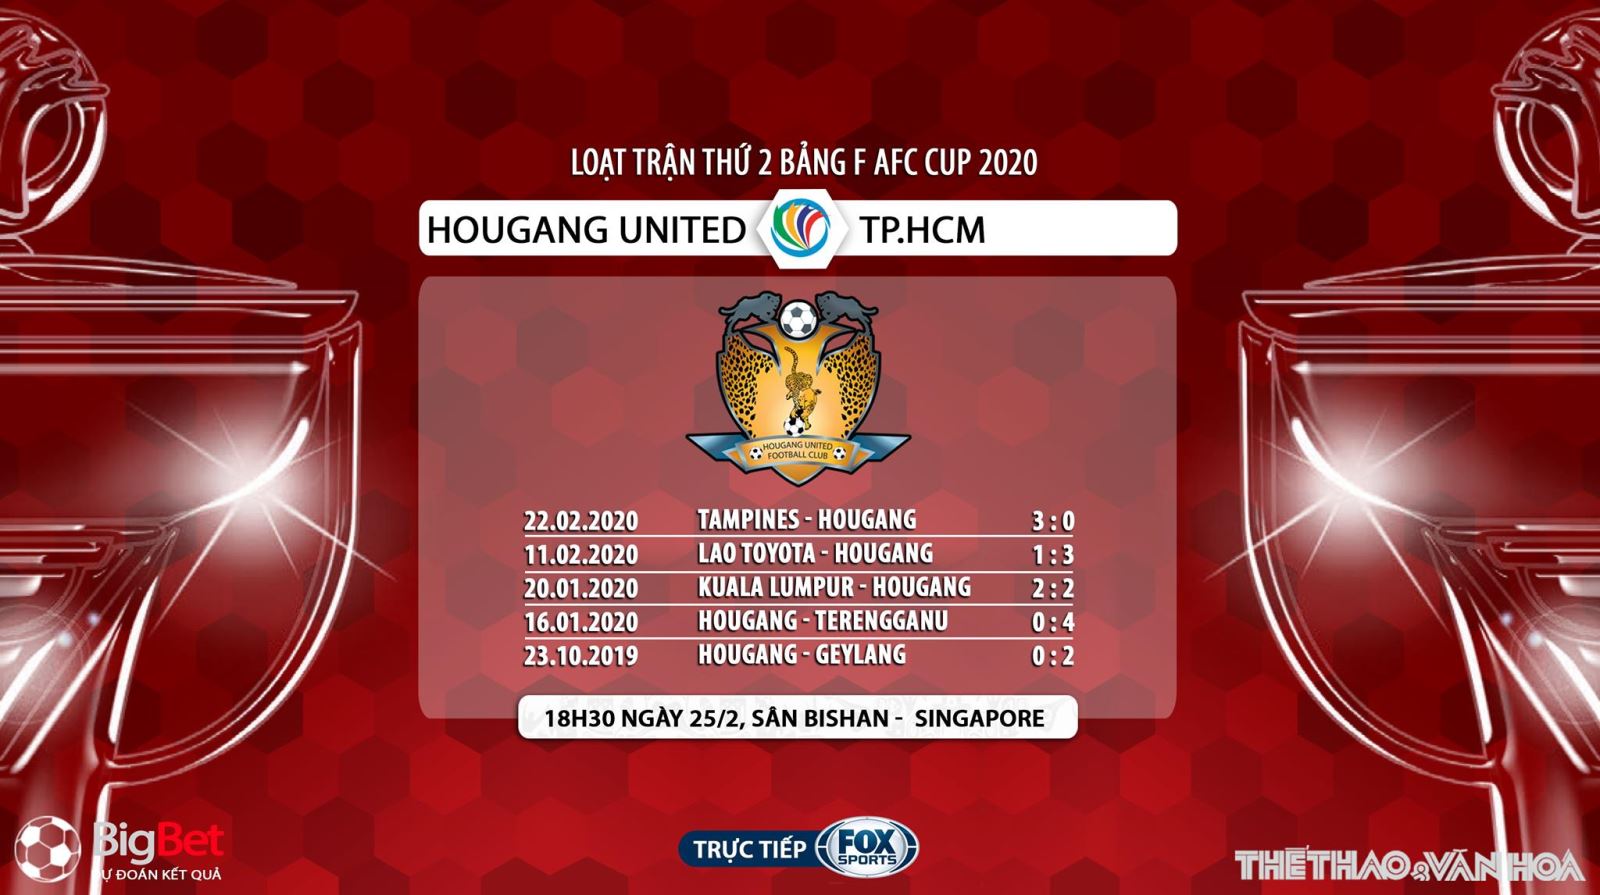 Hougang United vs TP.HCM, dự đoán Hougang United vs TP.HCM, nhận định Hougang United vs TP.HCM, Hougang United, TP.HCM, trực tiếp bóng đá, lịch thi đấu bóng đá, AFC Cup